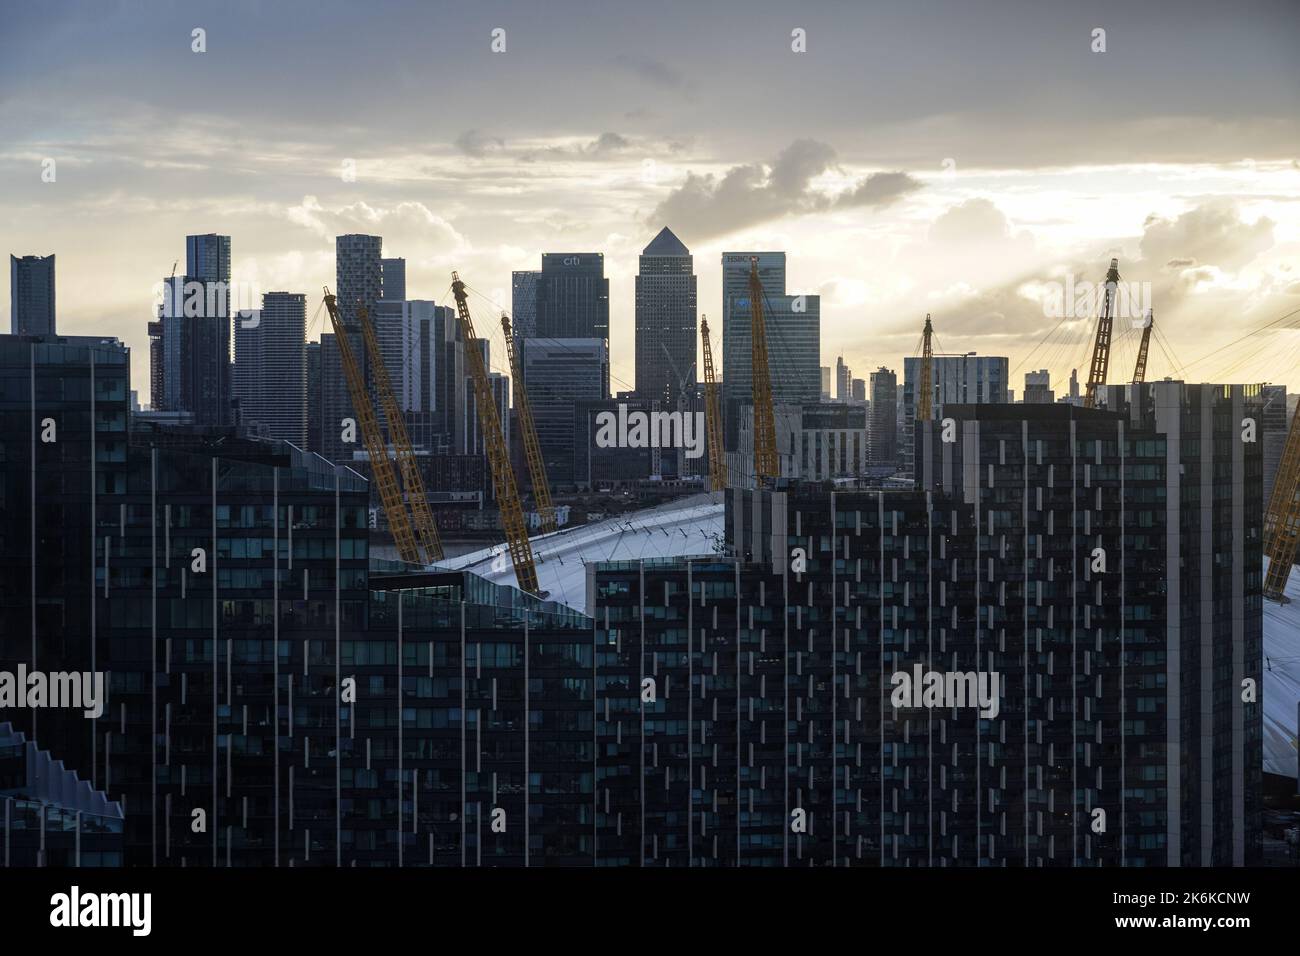 Vue aérienne du développement de logements Upper Riverside sur la péninsule de Greenwich avec les gratte-ciels Arena O2 et Canary Wharf, Londres, Angleterre Banque D'Images